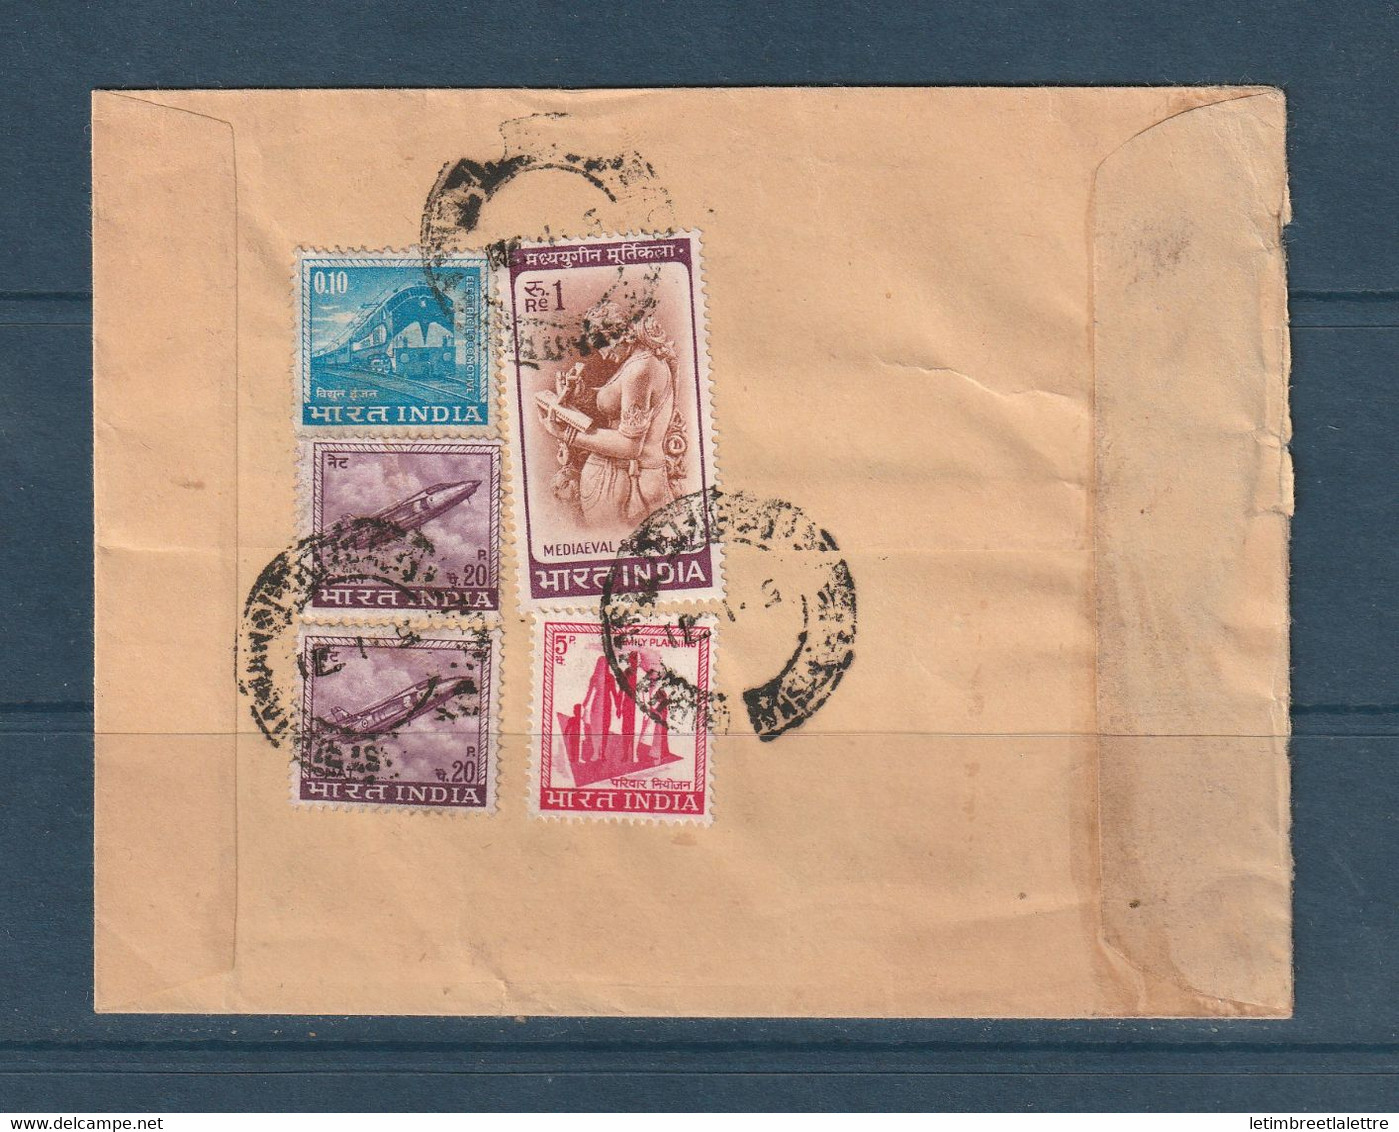 Inde - Poste Aérienne - Enveloppe Avec Griffe India Government Service Pour La France - Military Service Stamp